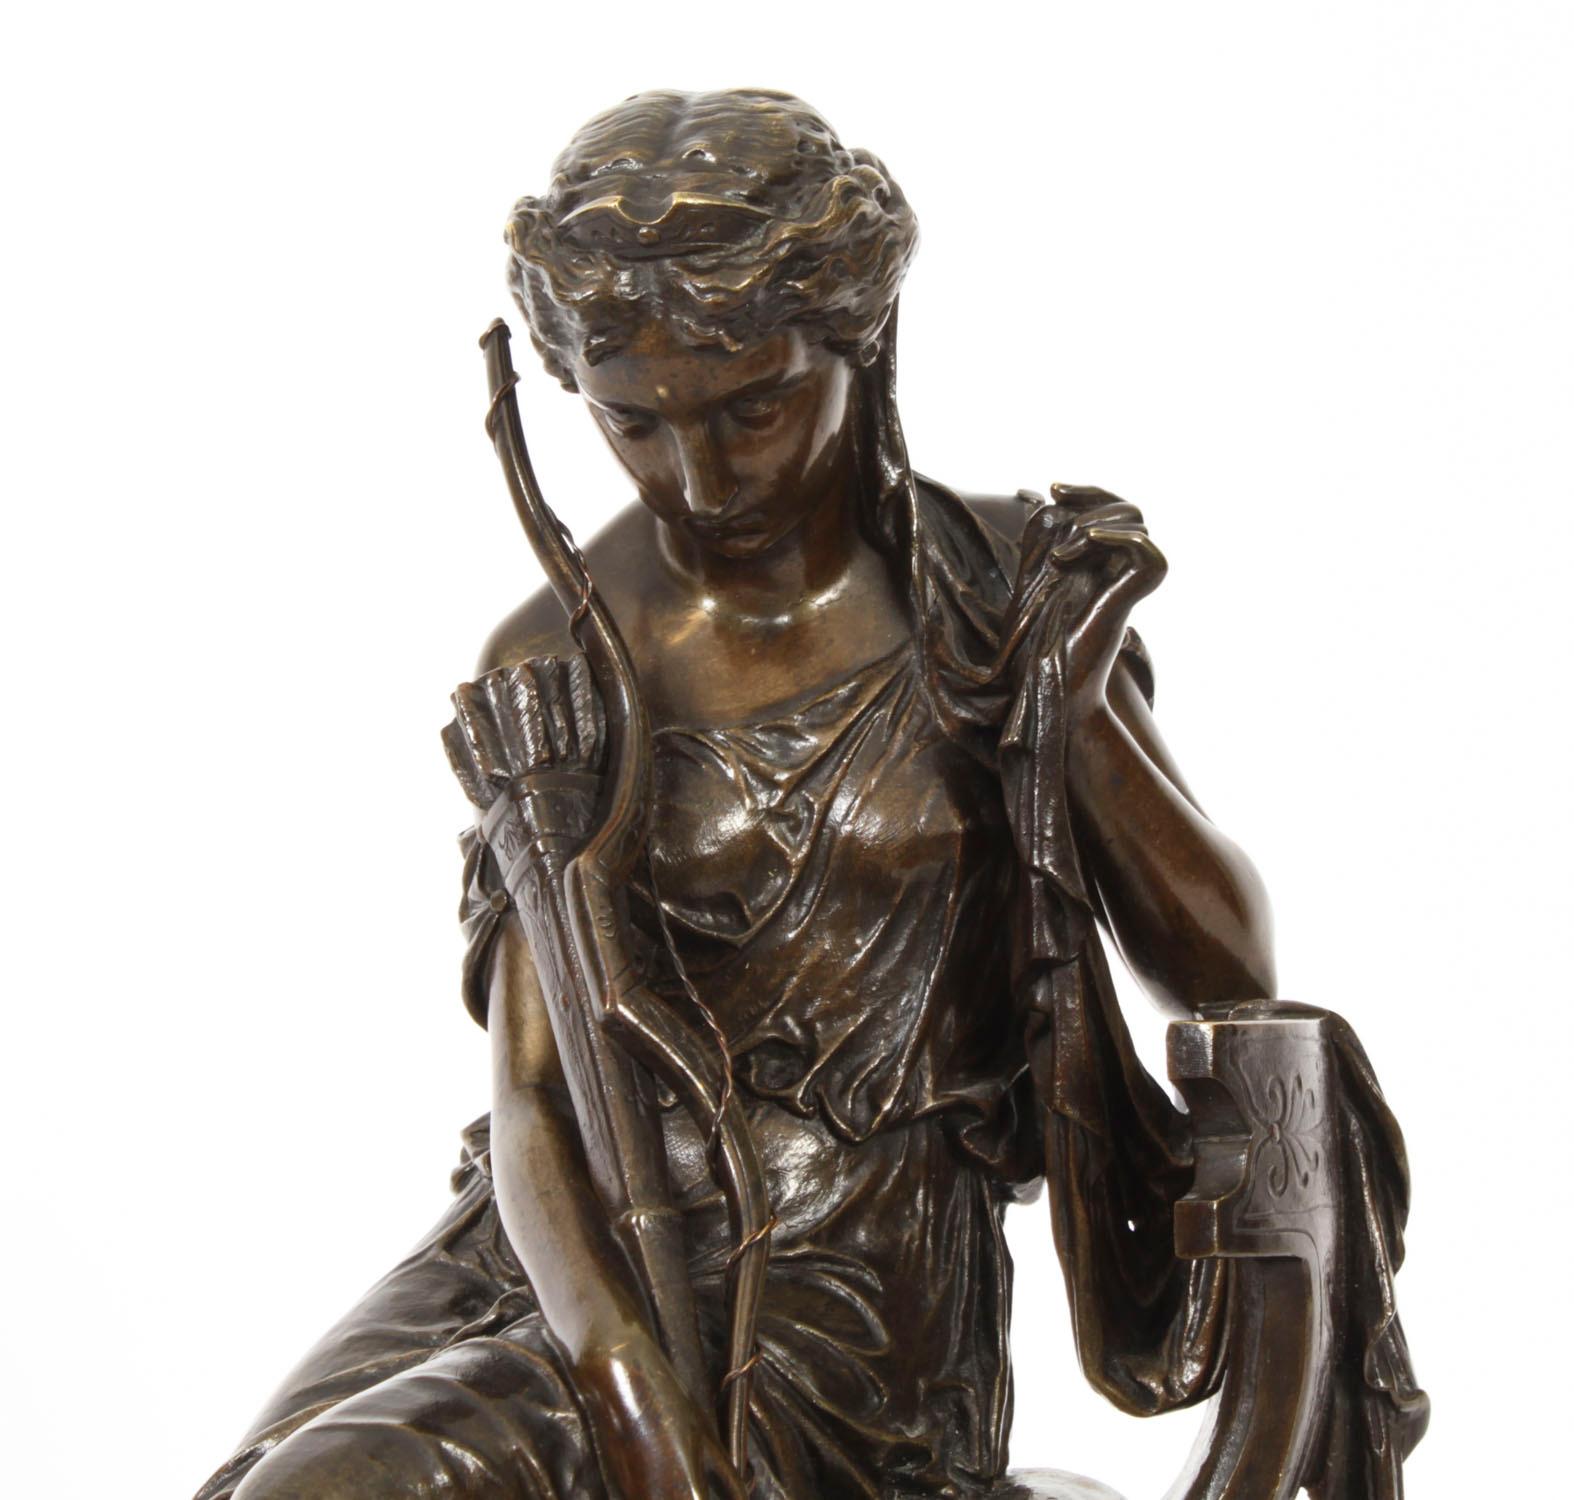 Un site  élégante figure en bronze du Grand Tour français représentant la déesse grecque Diane par Marius-Jean-Antonin Mercié, français 1845 - 1916,  datant d'environ 1880.

La déesse Diane, assise et vêtue, tient un arc et des flèches.  la tête